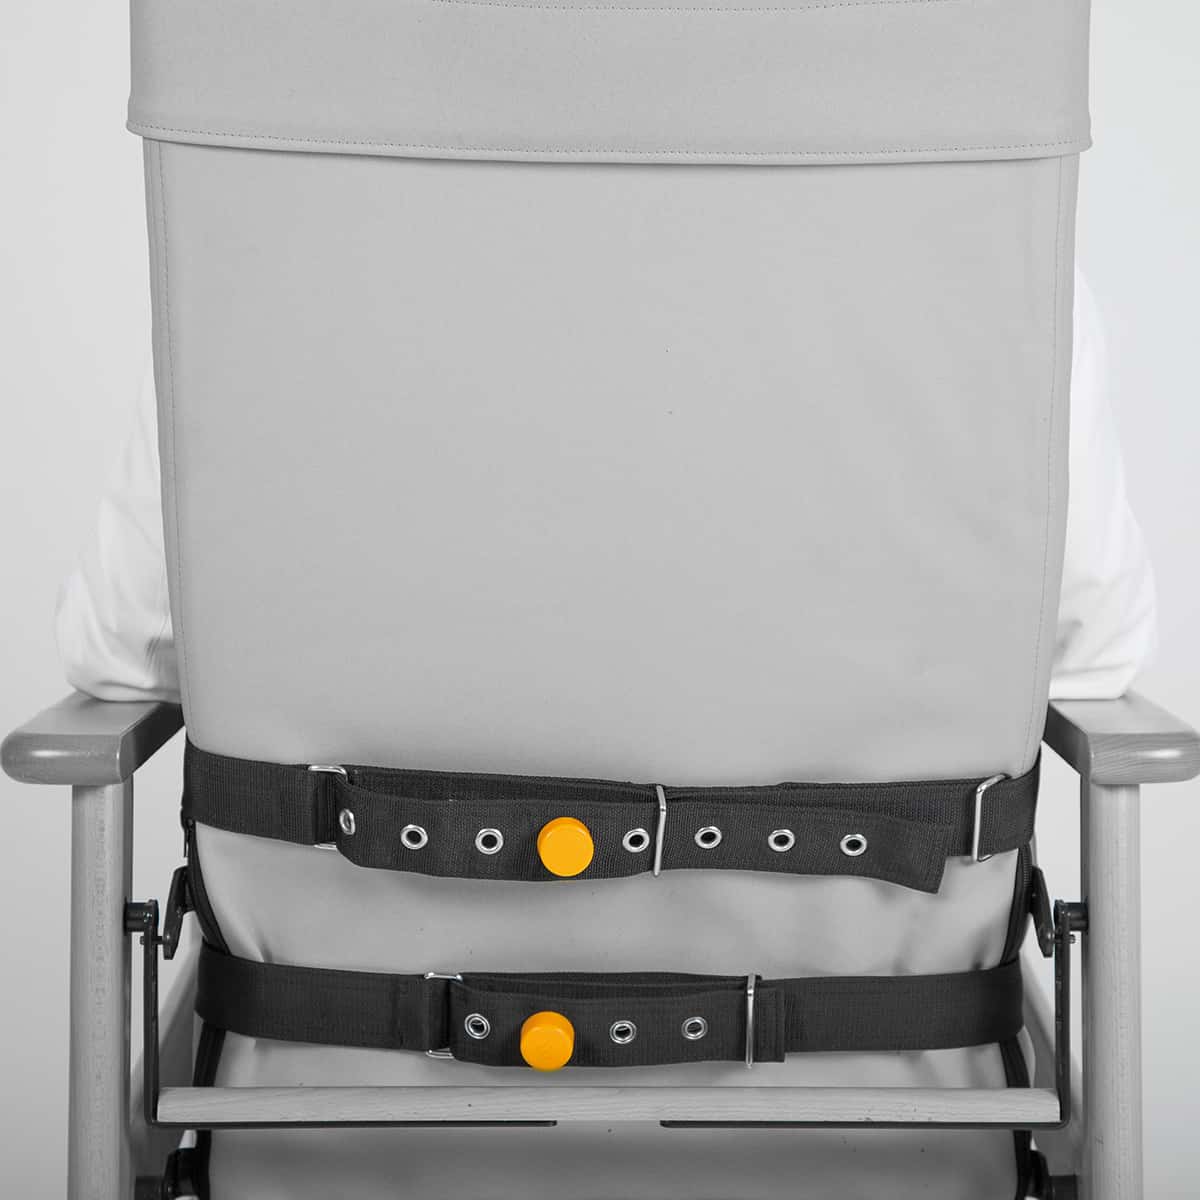 Ceinture-fauteuil-hospitalier-4465-fermeture-magnetique-Medisport